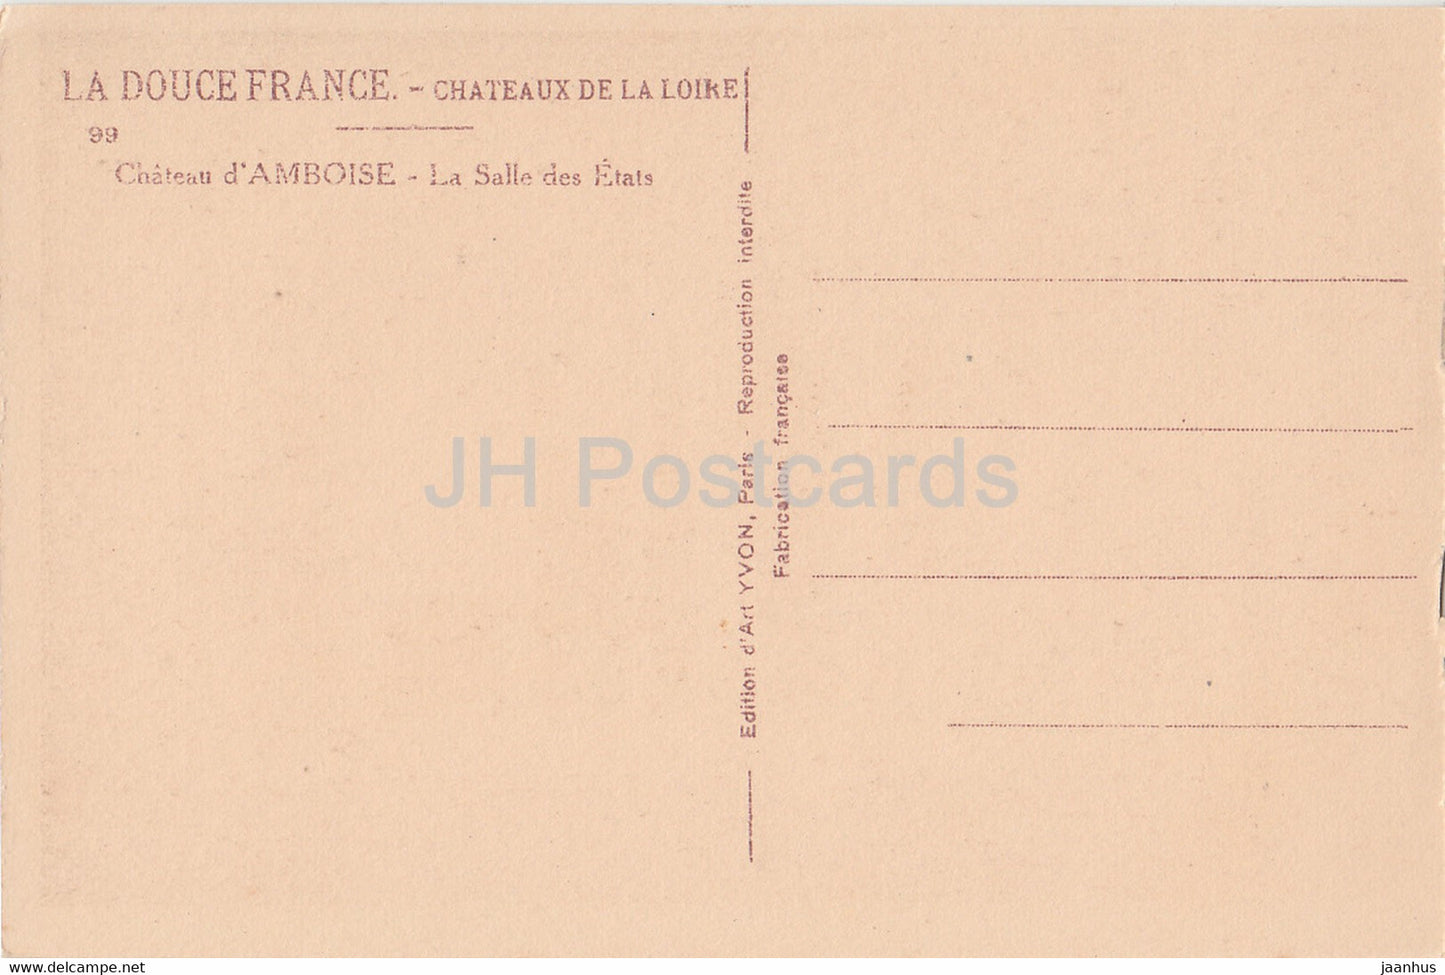 Chateau d'Amboise - La Salle des Etats - 99 - castle - old postcard - France - unused